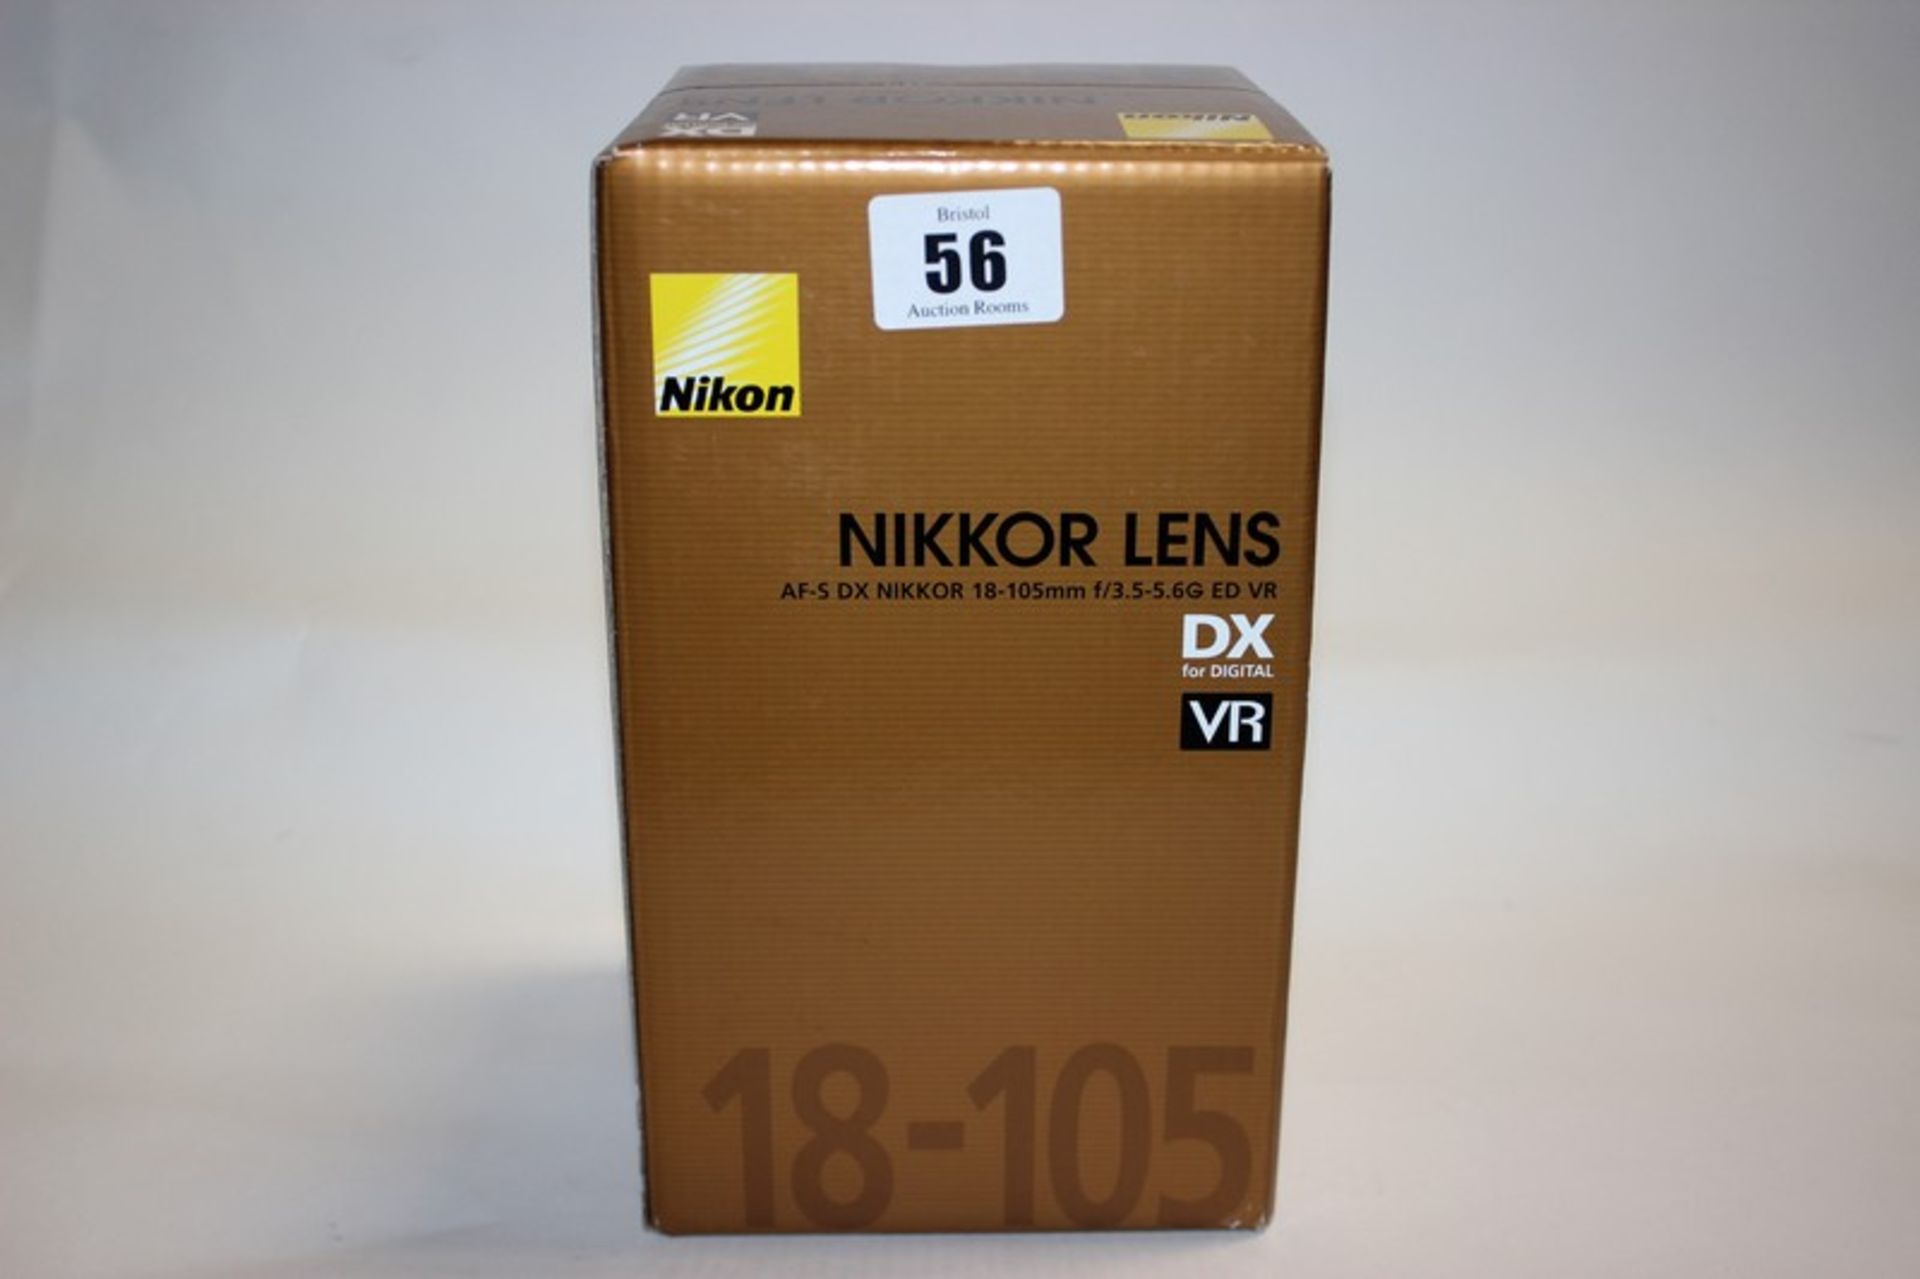 A Nikon AF-S DX Nikkor 18-105mm f/3.5-5.6G ED VR Lens (Boxed as new).